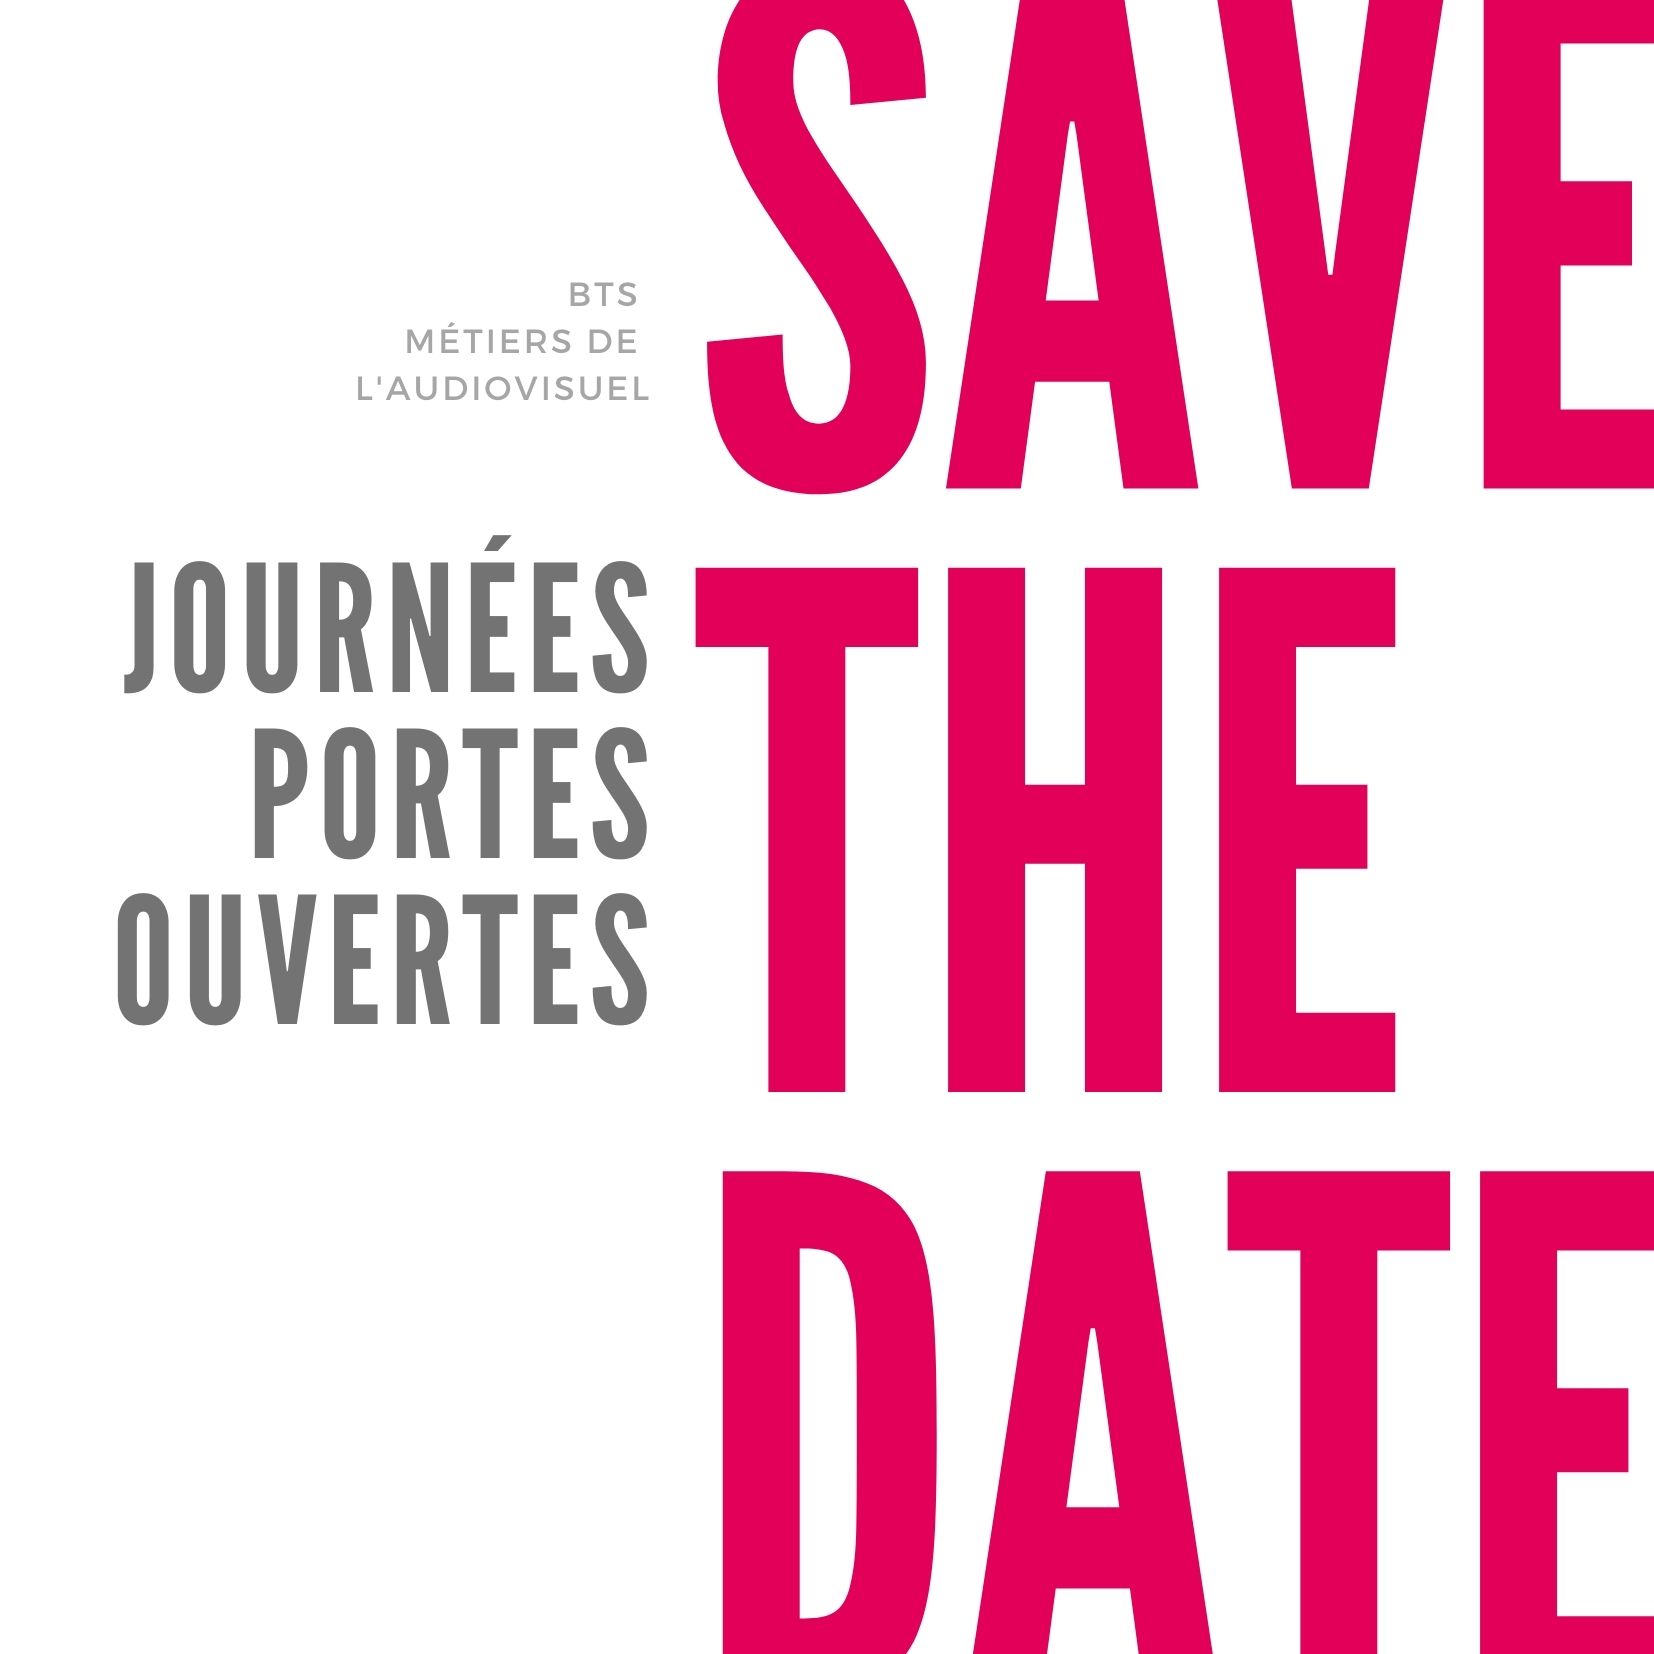 Journée Portes Ouvertes - Save the date